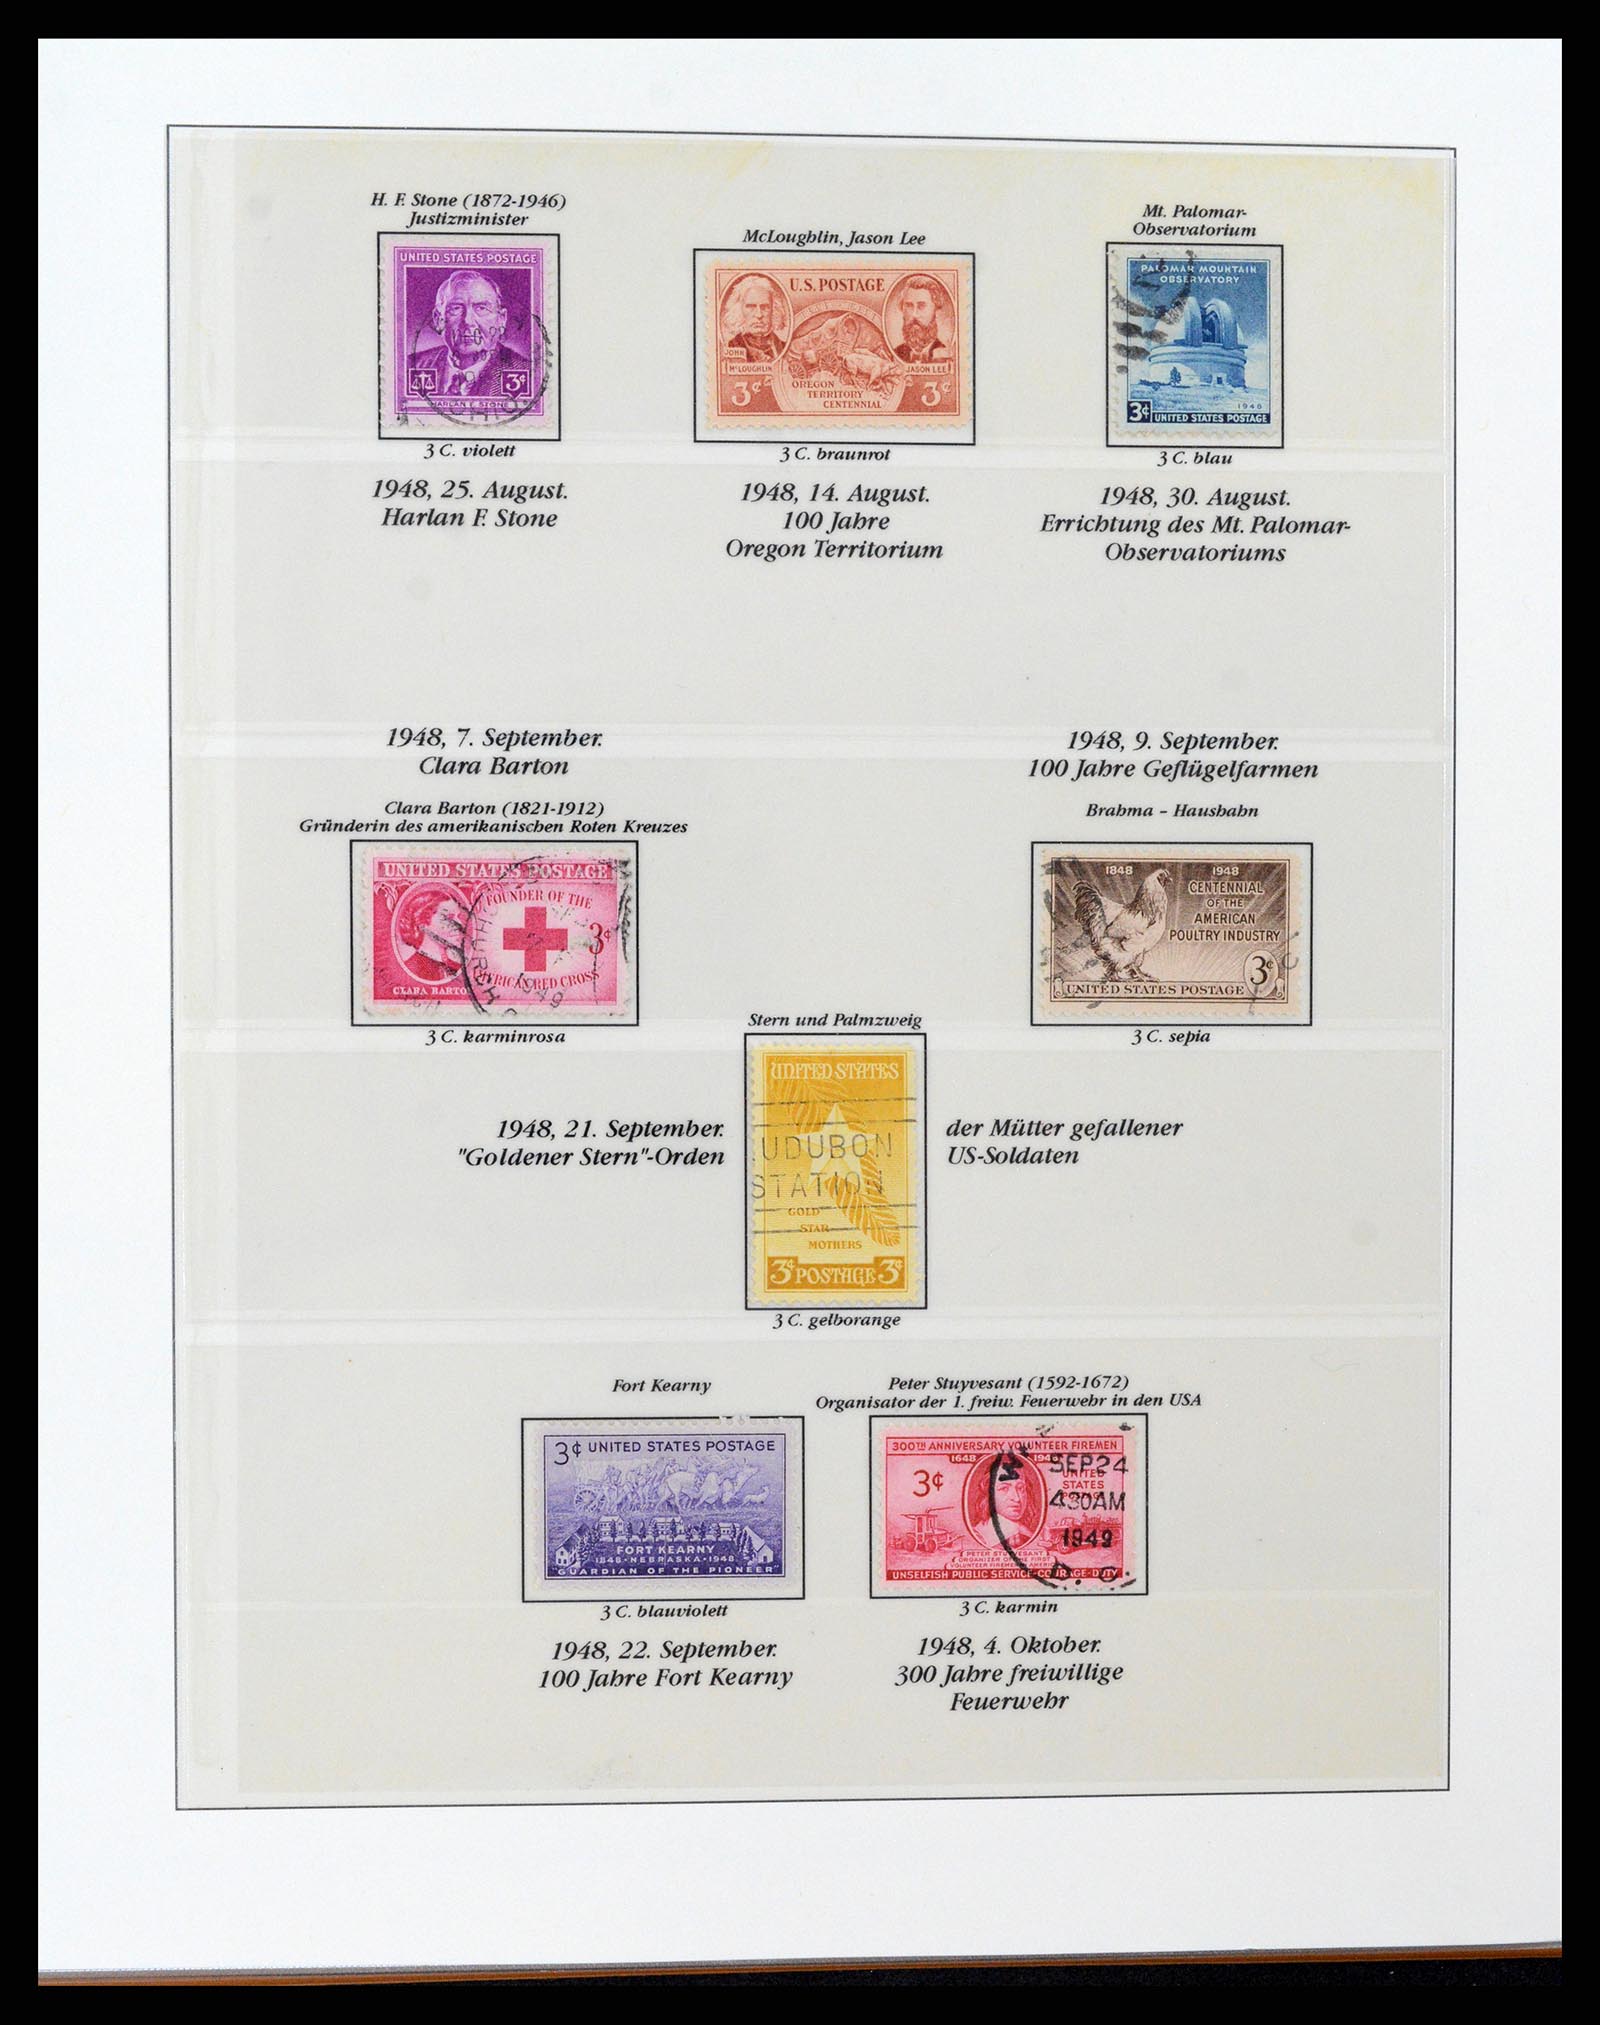 37653 116 - Stamp collection 37653 USA 1870-1954.